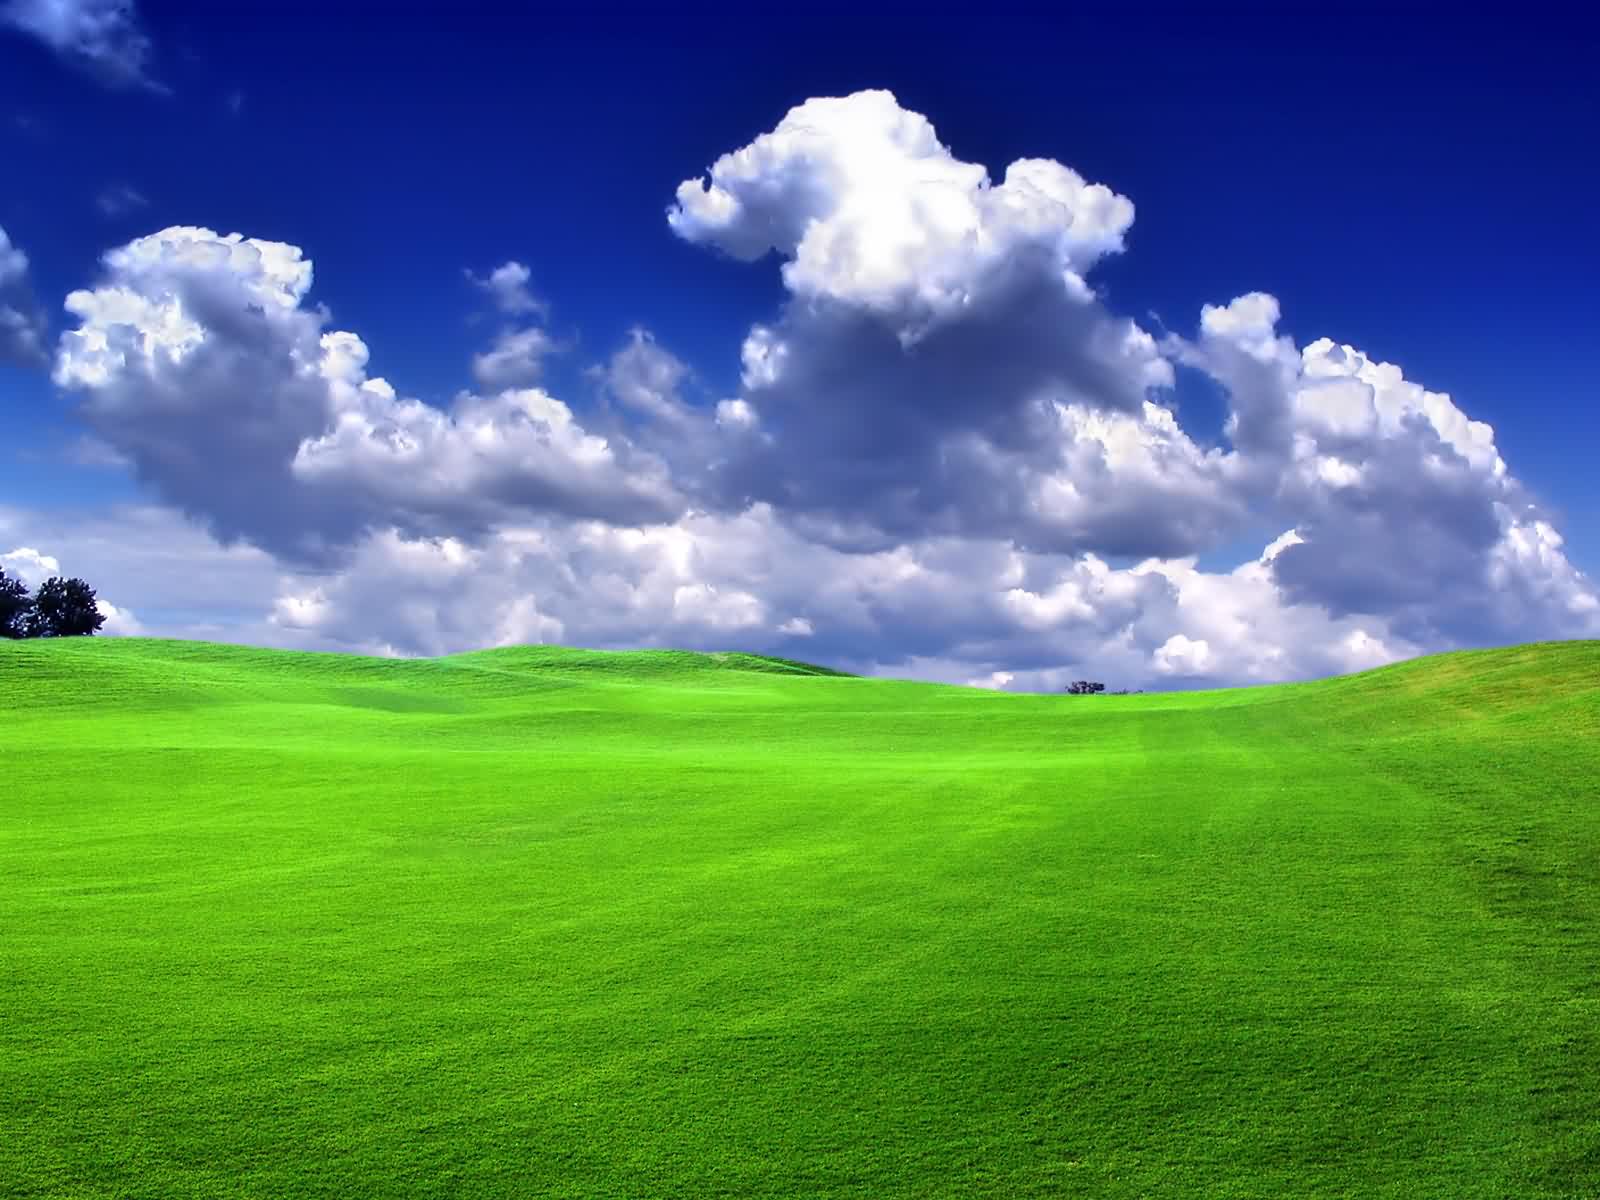 natürliches bild hd wallpaper,wiese,himmel,grün,natürliche landschaft,natur